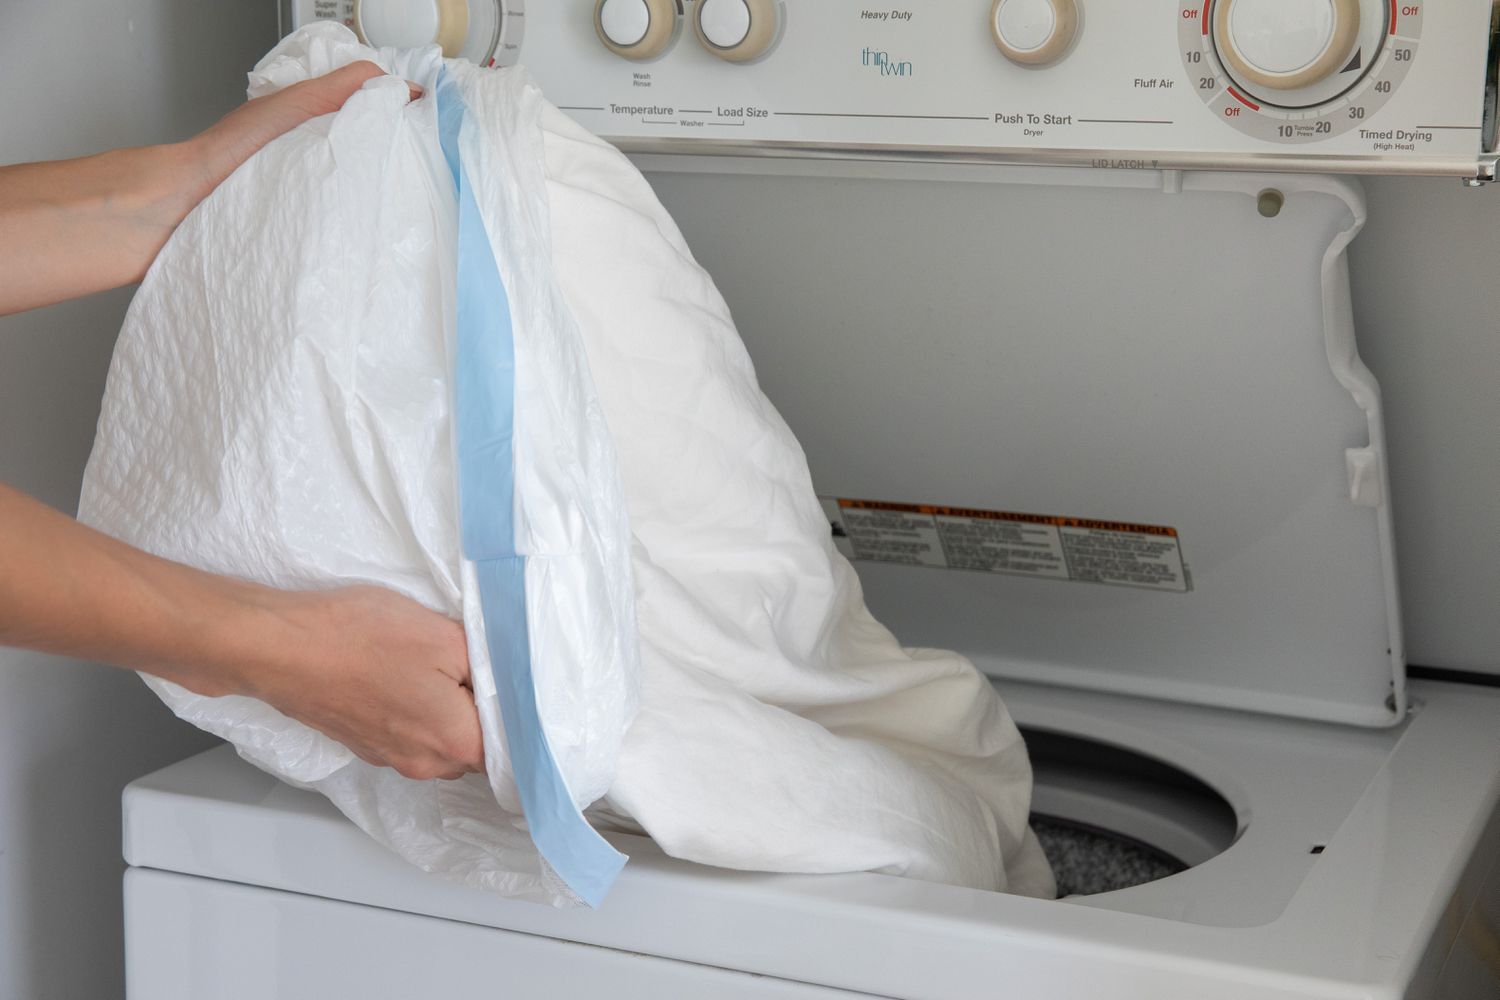 Wanzenbefallene Kleidung in einem Plastikmüllsack, der in die Waschmaschine geworfen wurde